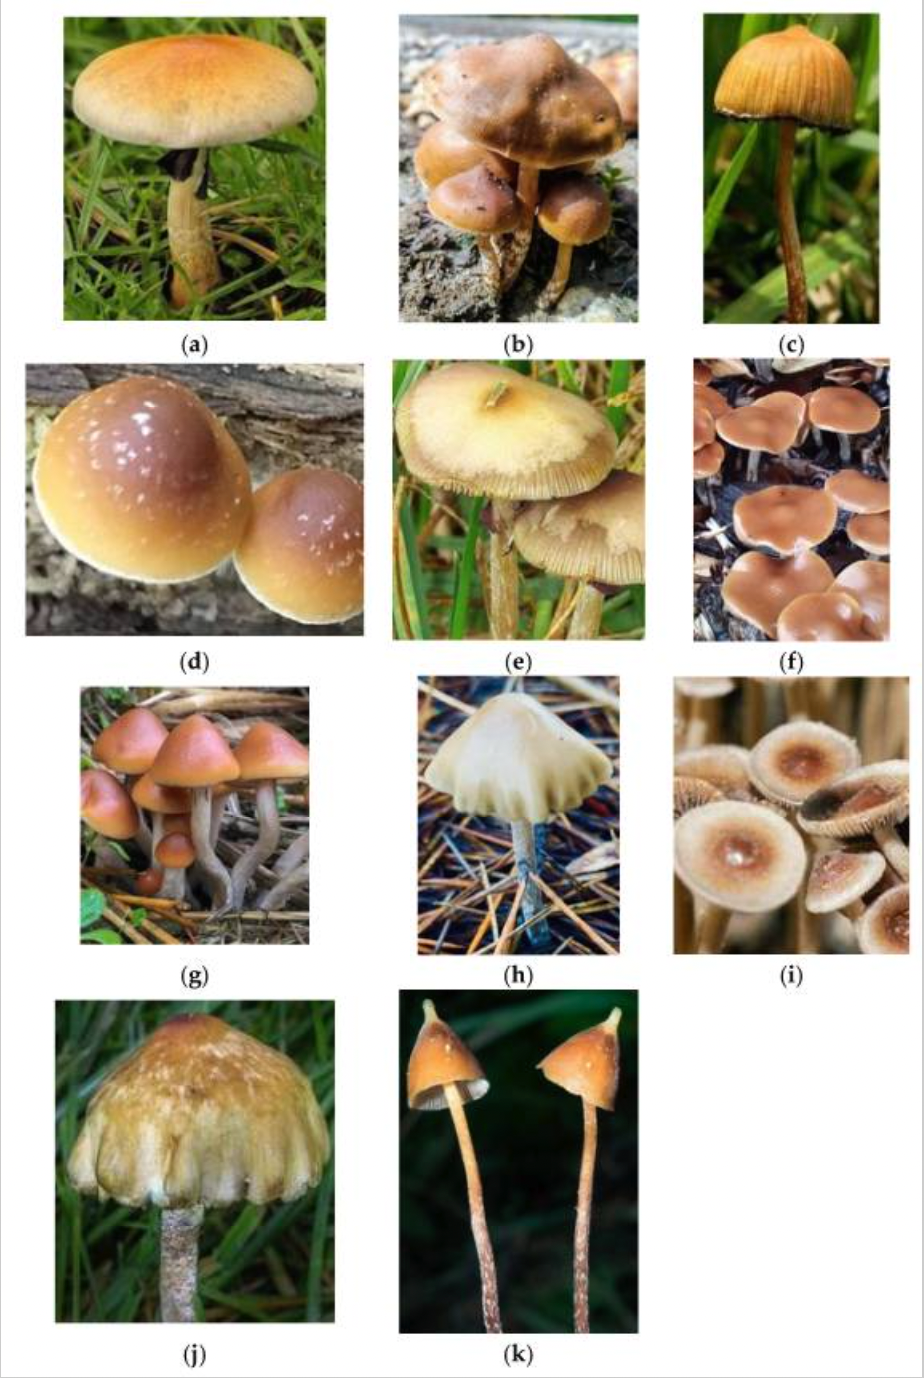 Examples of psilocybin-producing mushrooms